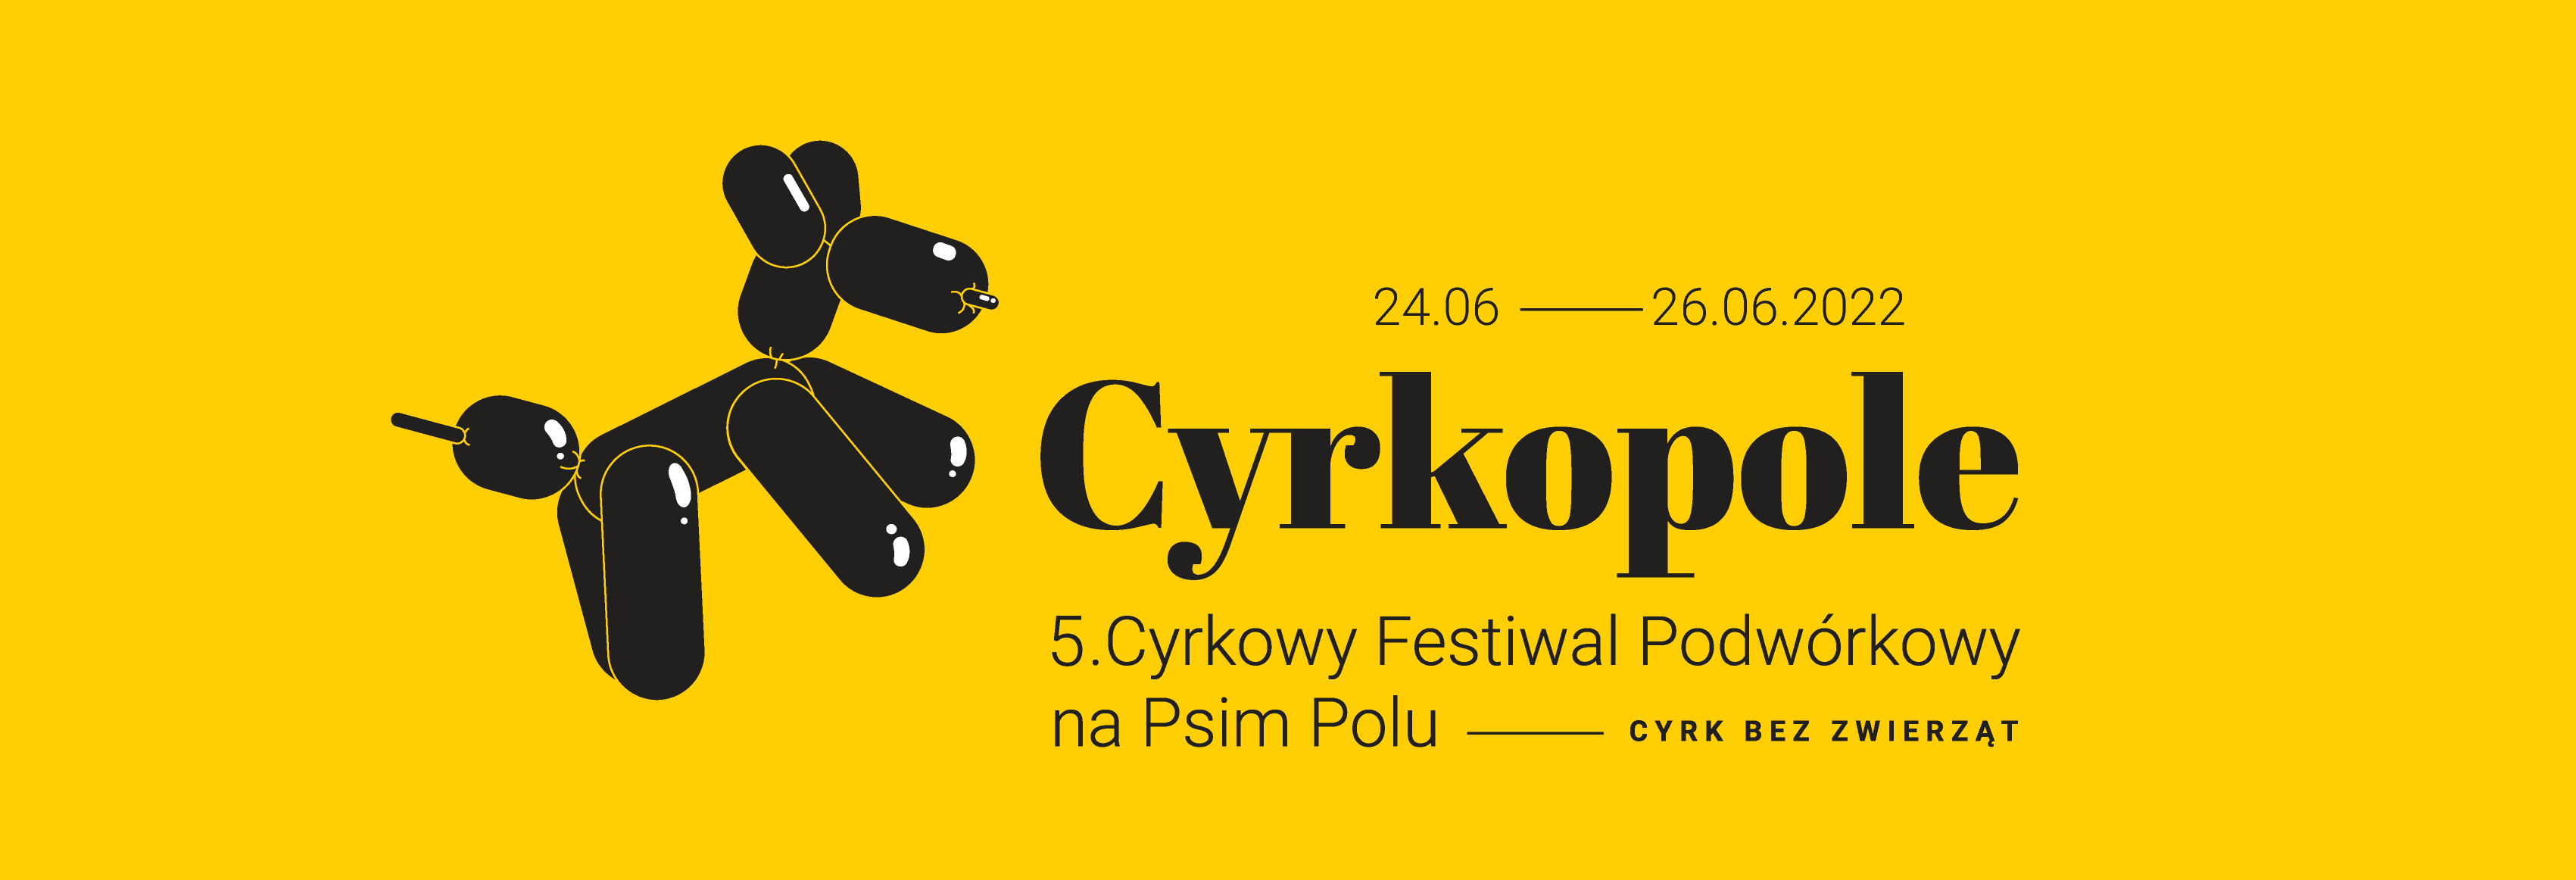 Grafika festiwalu Cyrkopole, balonikowy pies oraz typografia po prawej stronie.